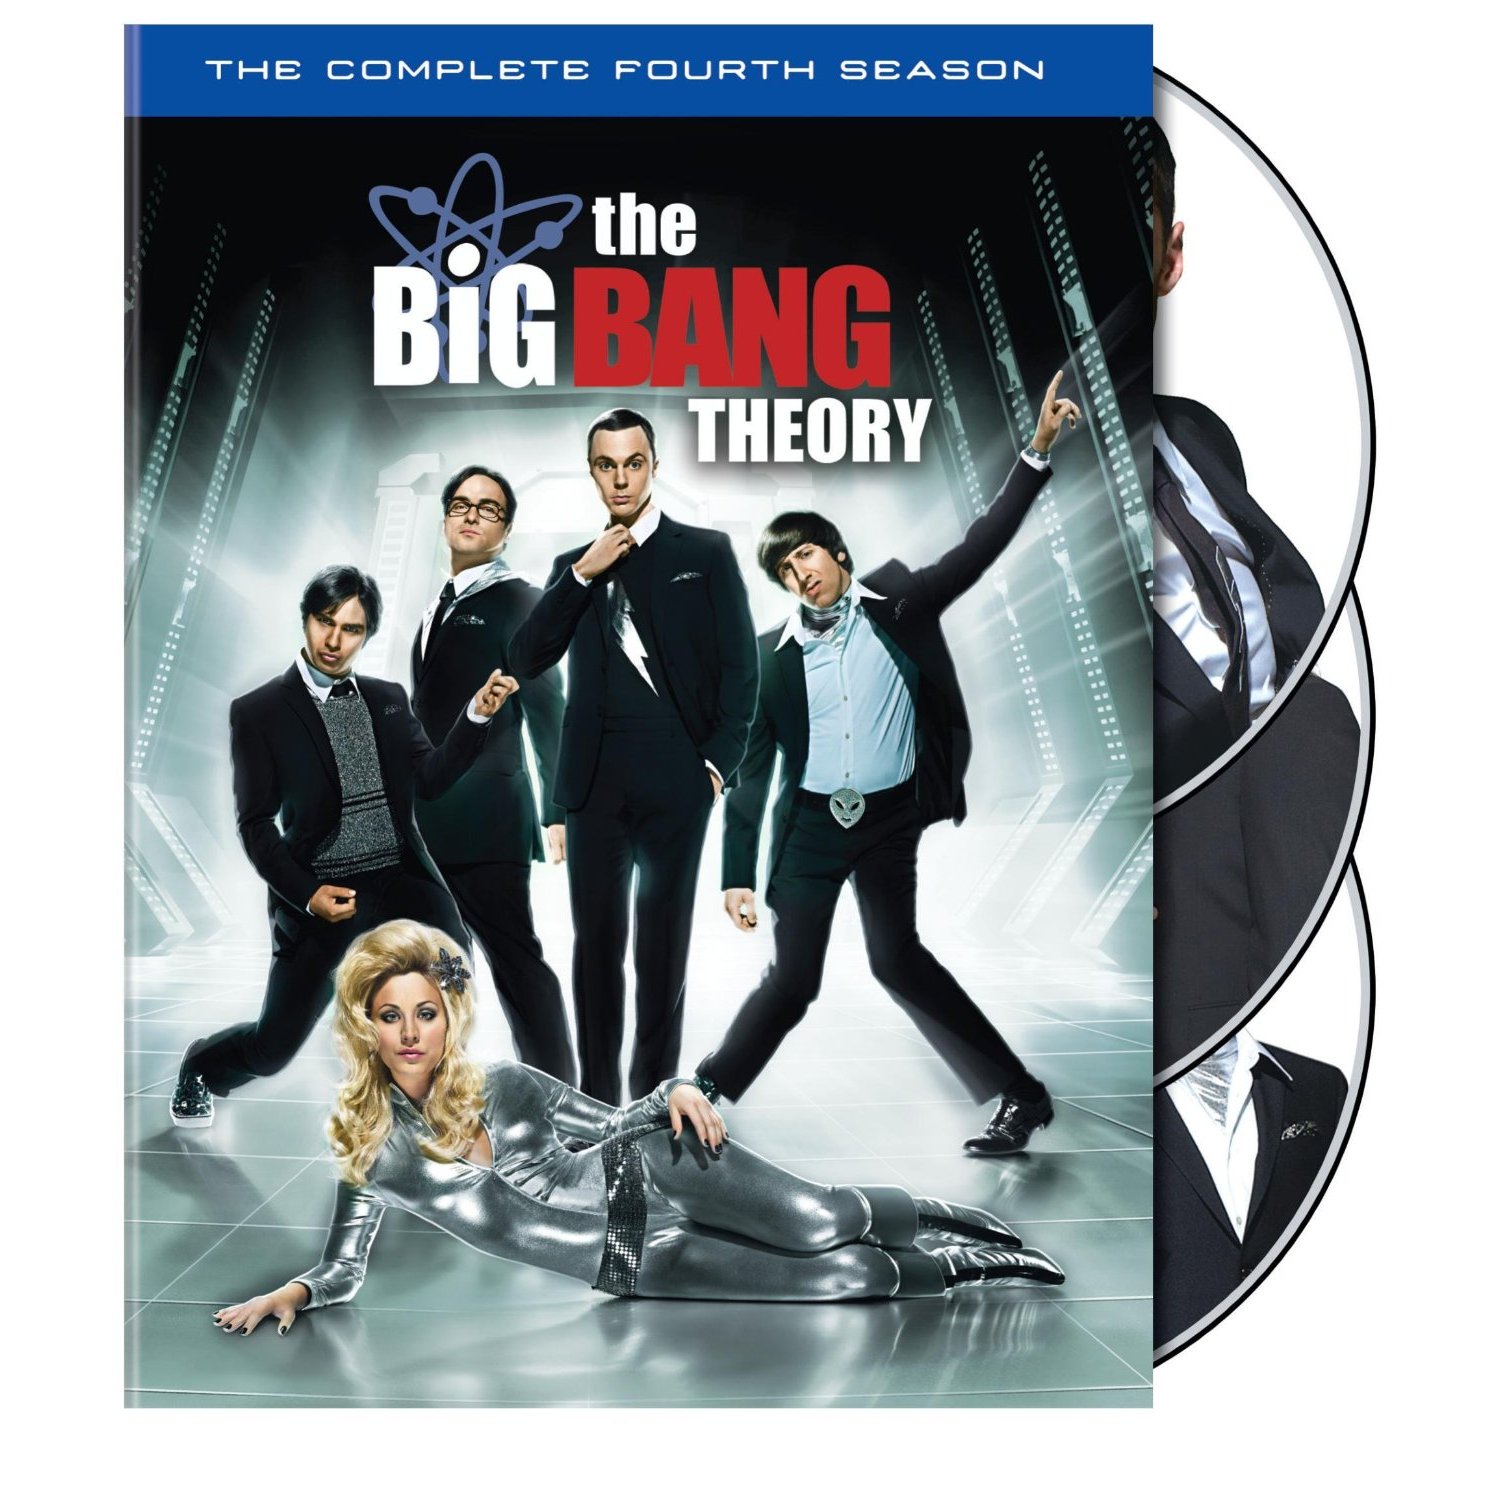 The Big Bang Theory Season 4 Disk 1